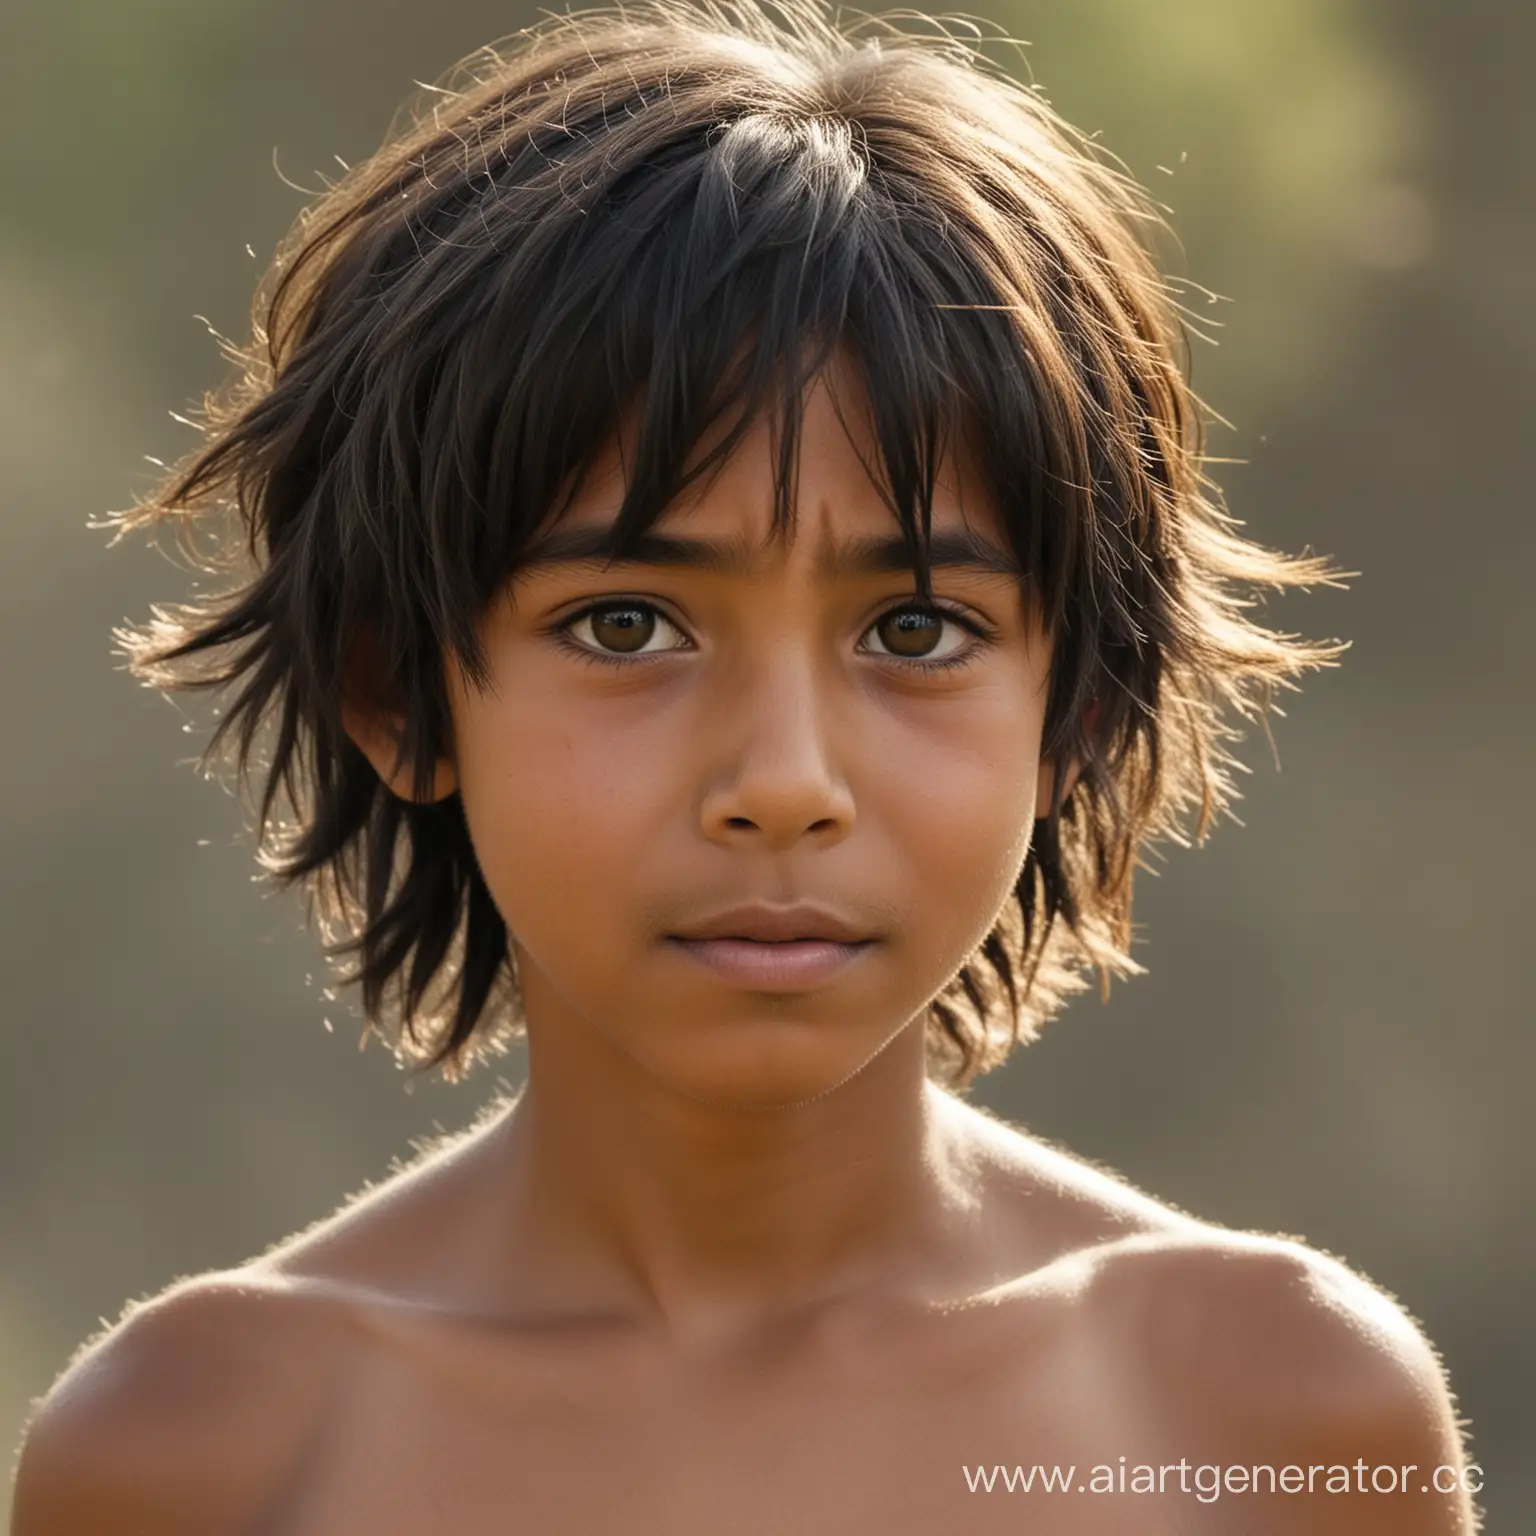 Маугли — десятилетний мальчик,обладающий невысоким ростом и худощавым телосложением. У него смуглая кожа, дикие неопрятные черные волосы, которые покрывают его лоб, уши и достигают его шеи, у нее глаза - карие и большой нос.